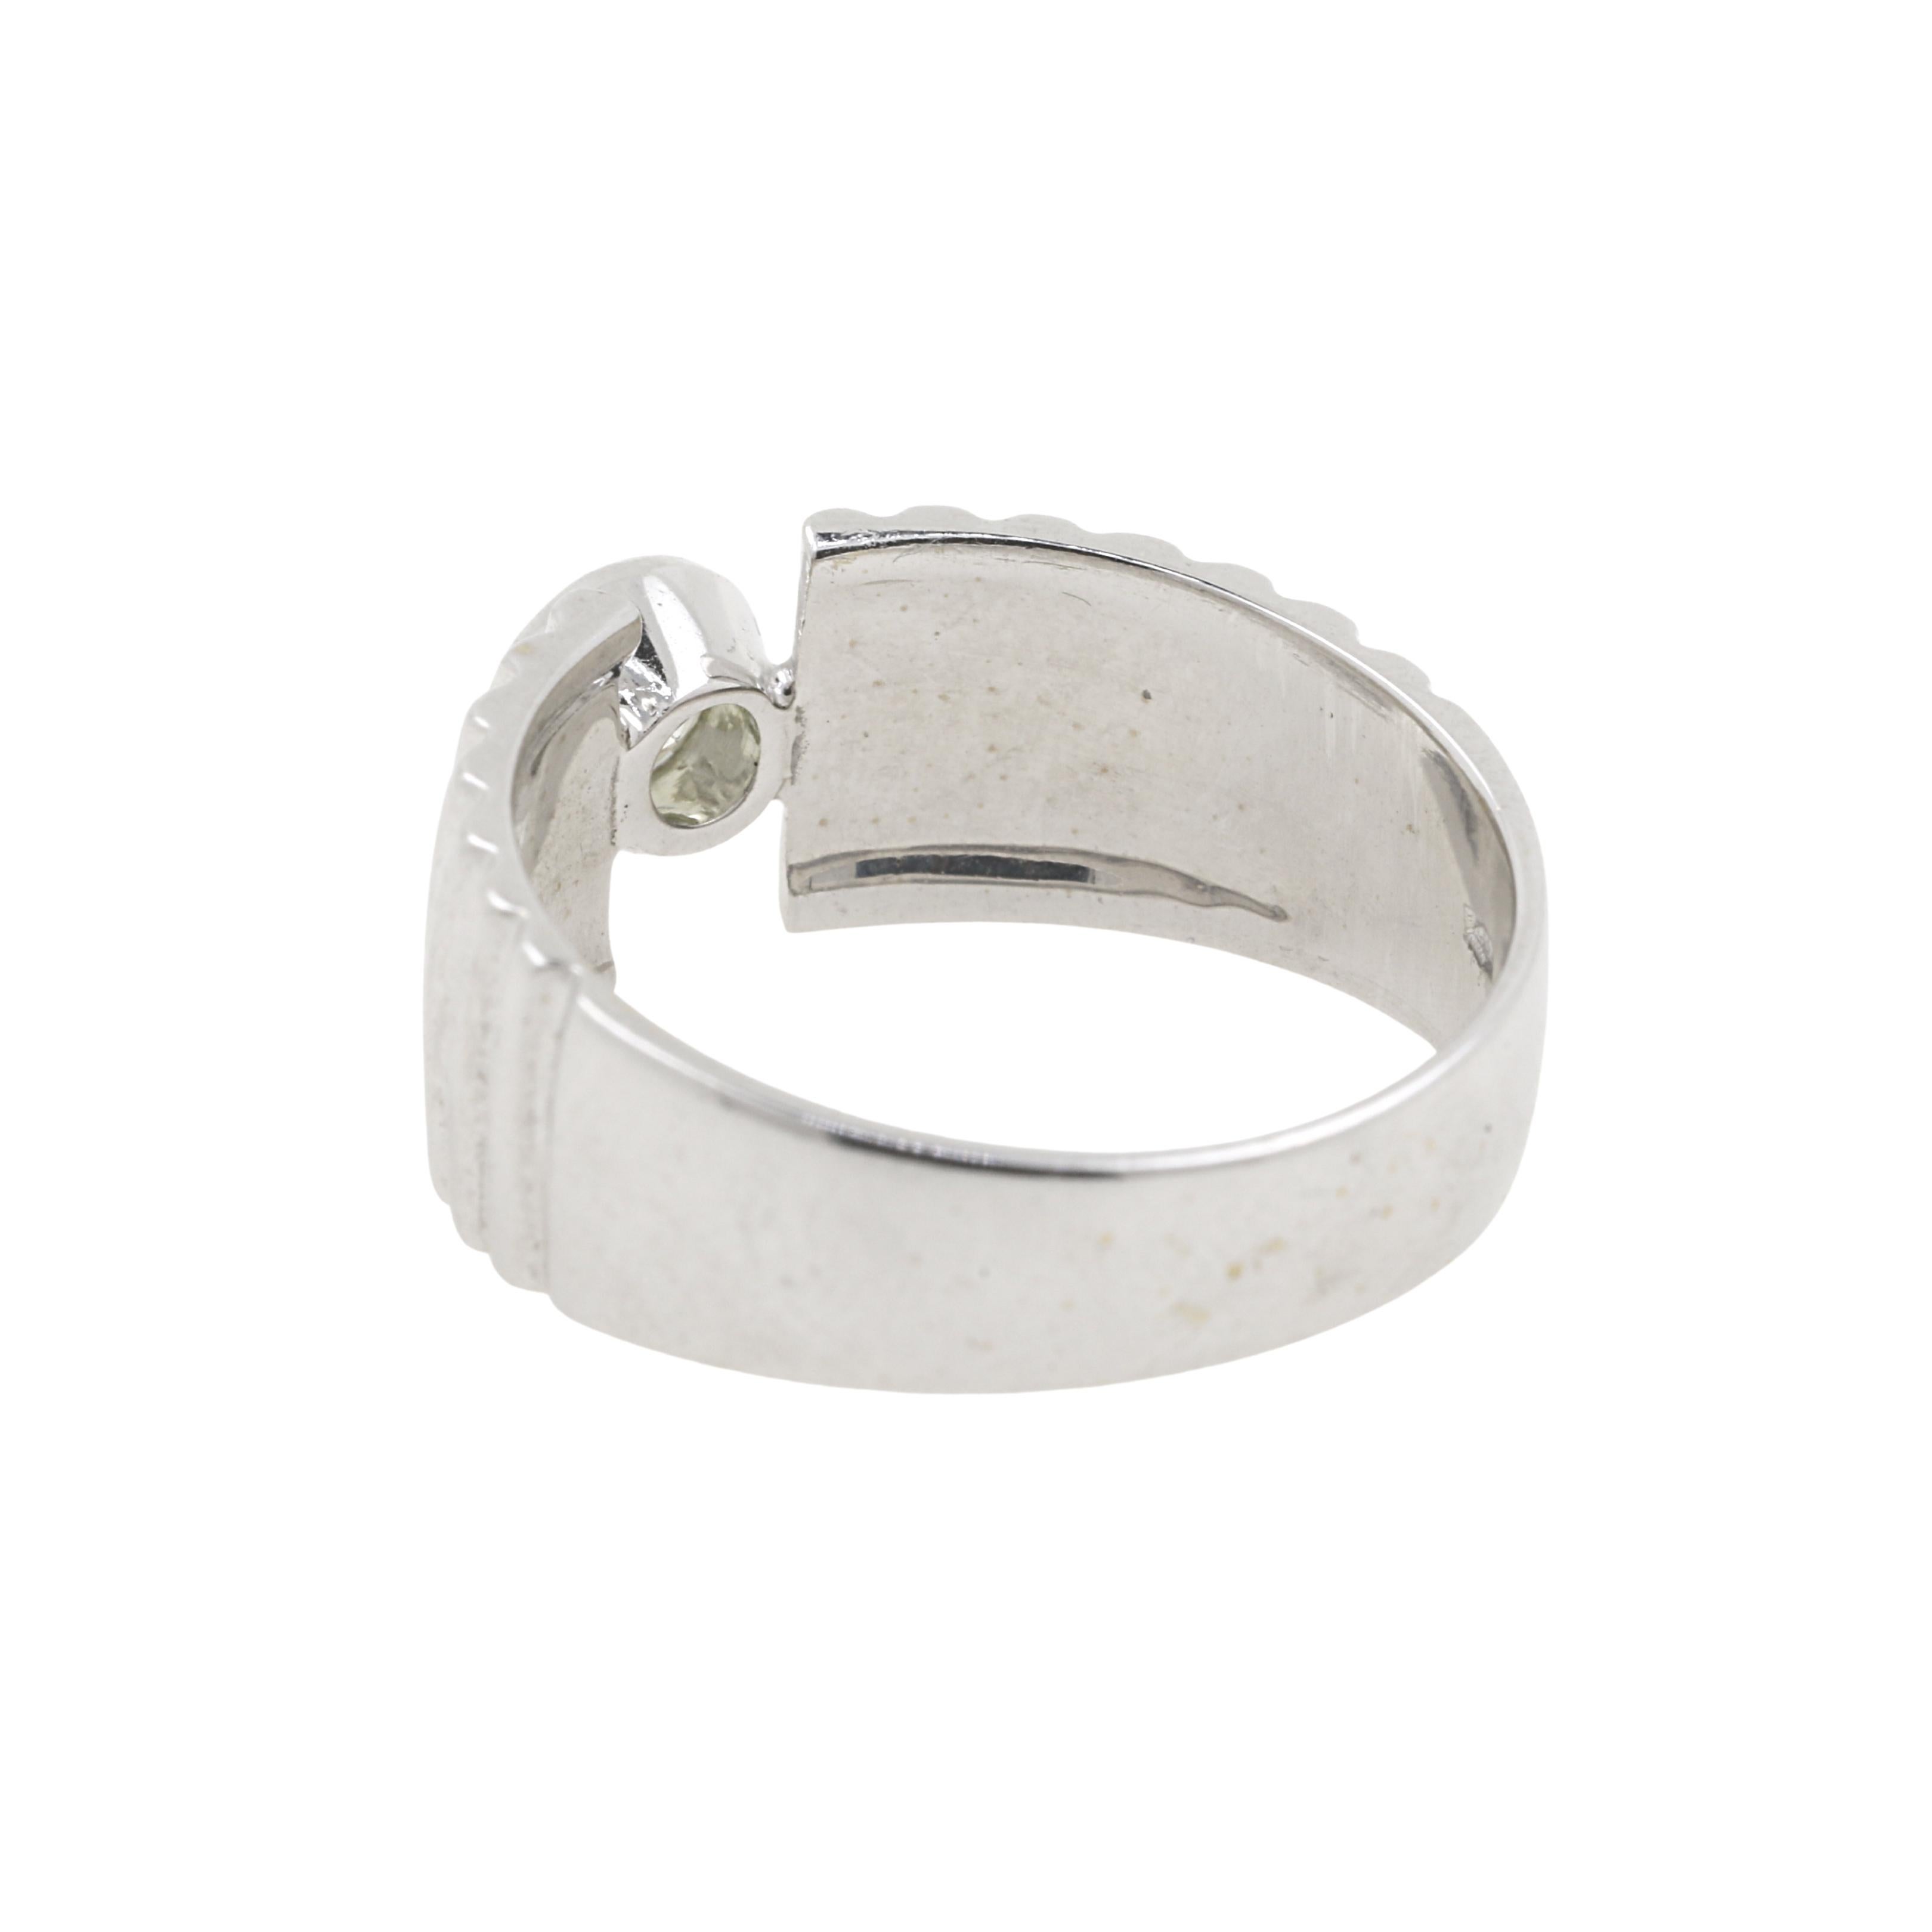 AIG Certified 0.56 Carat Diamond Engagement Ring and 18 Karat White Gold 1